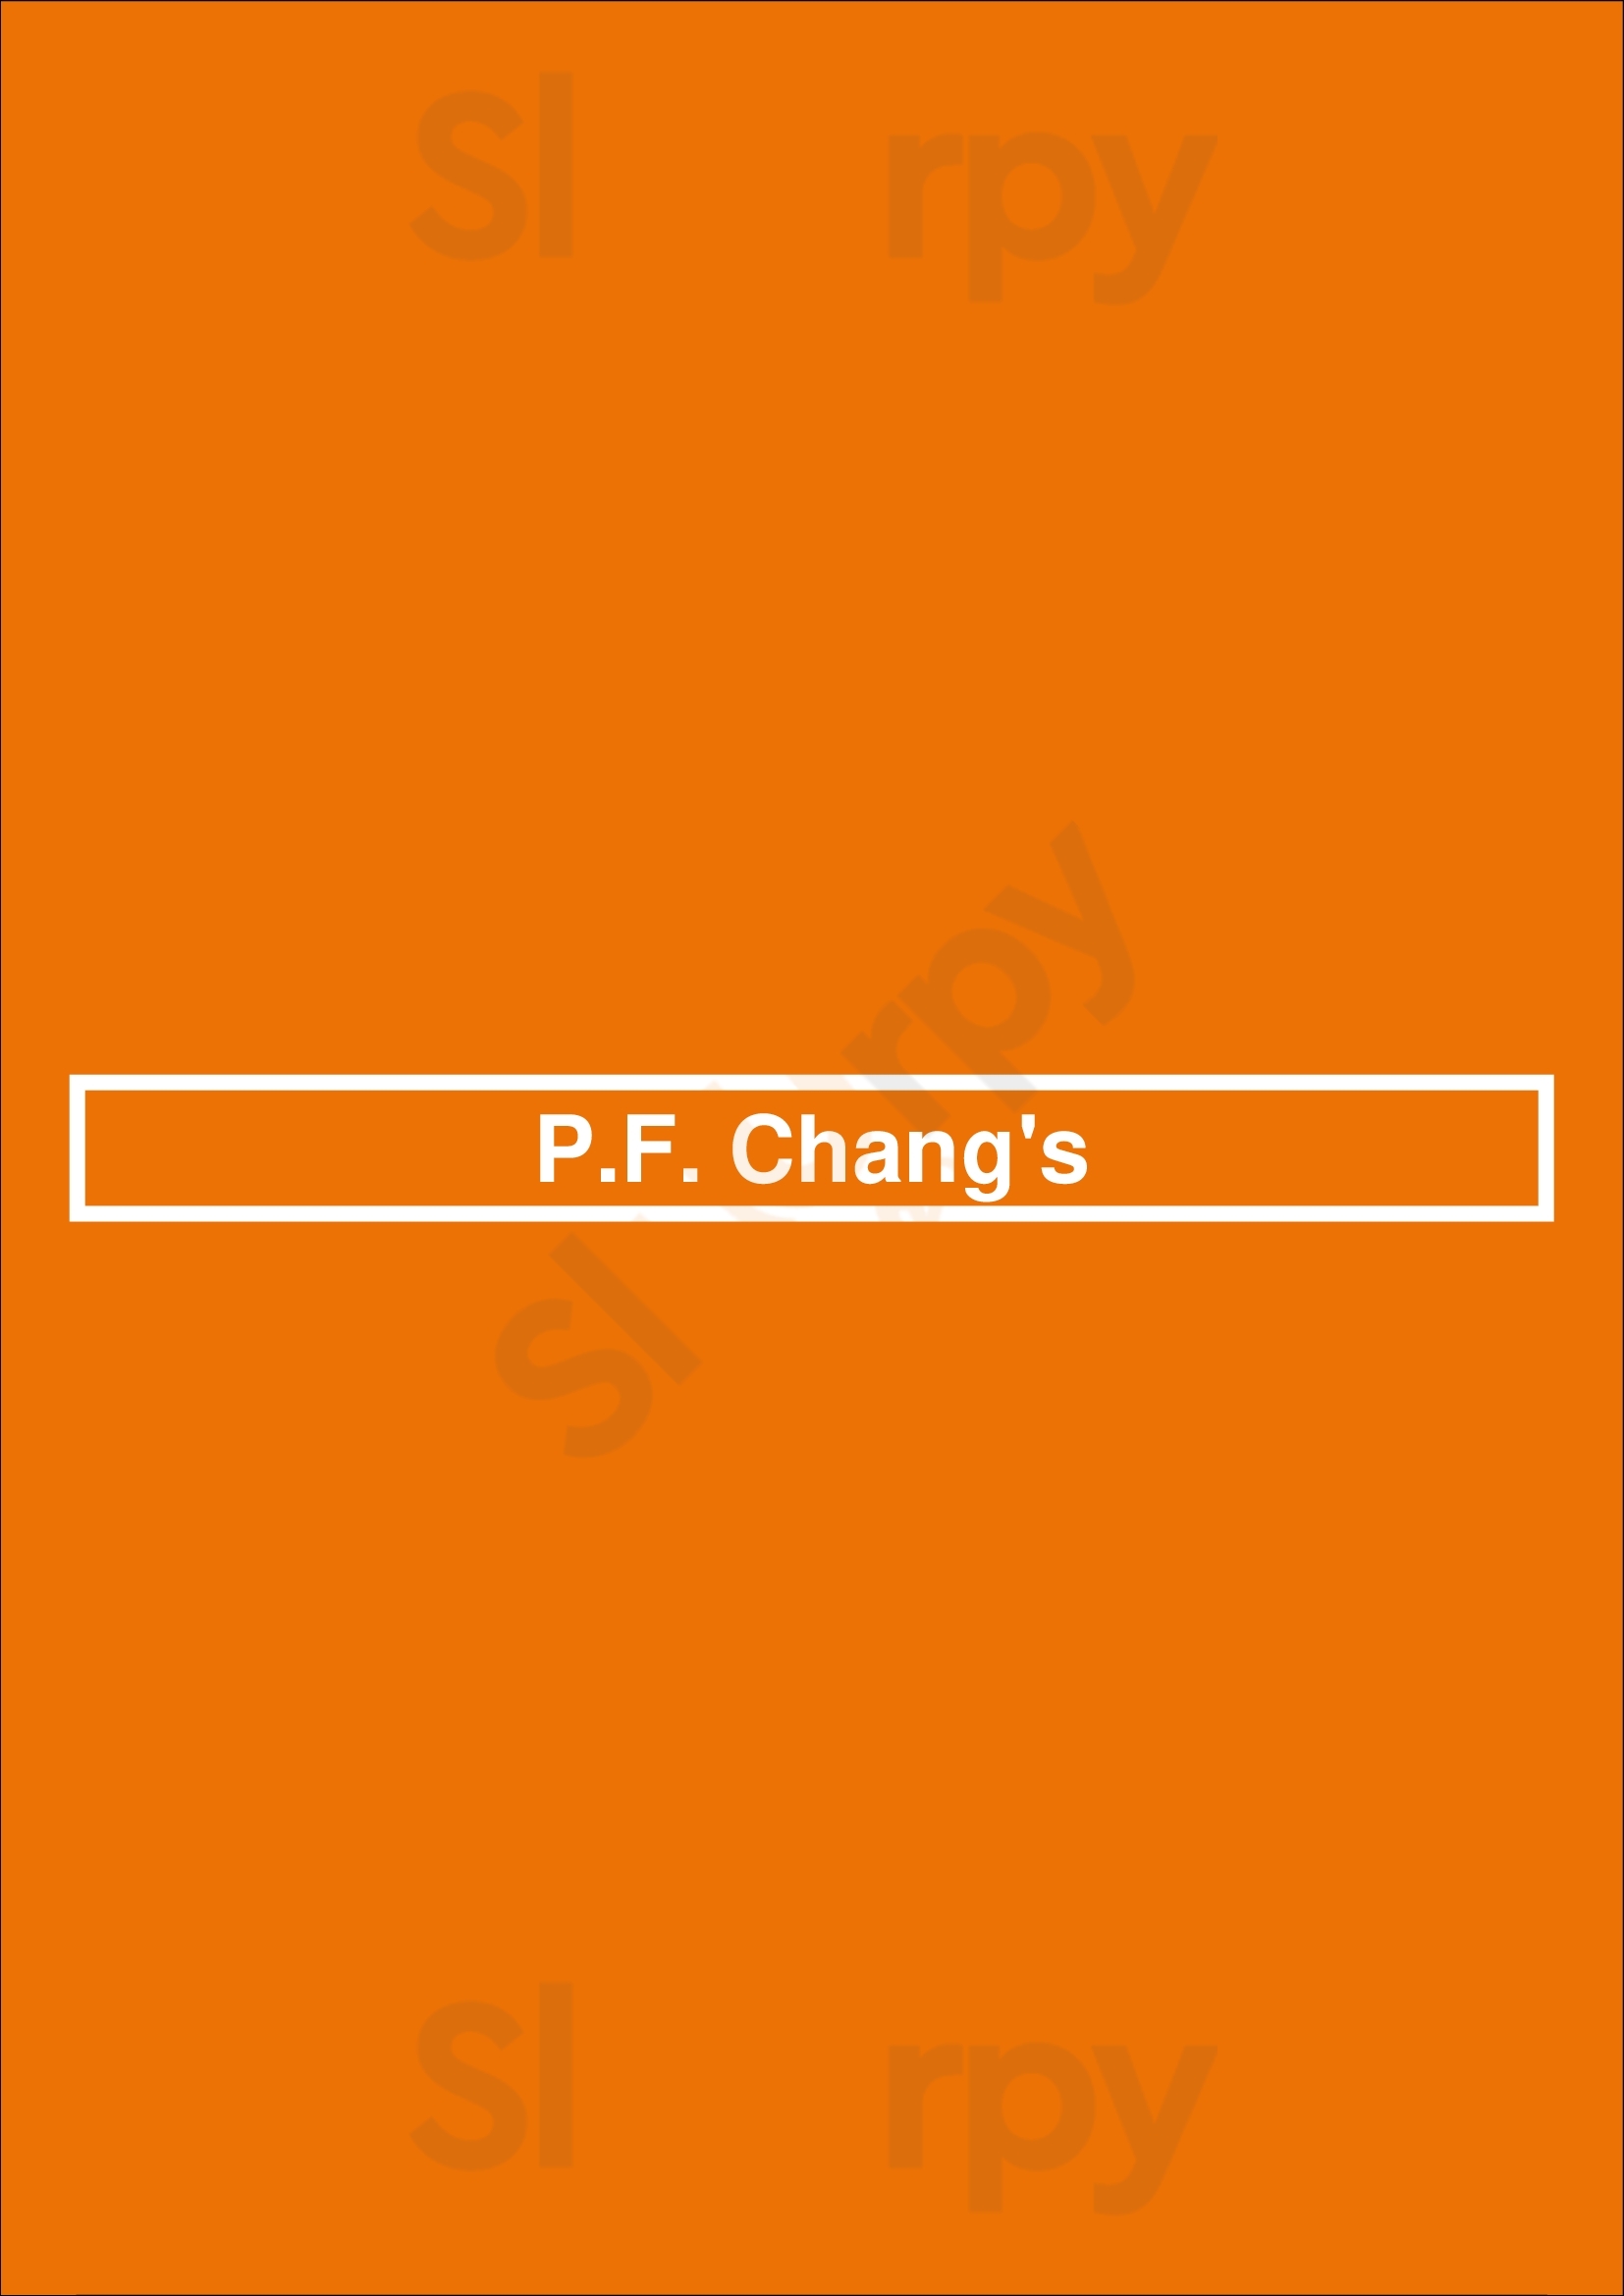 P.f. Chang's Fresno Menu - 1